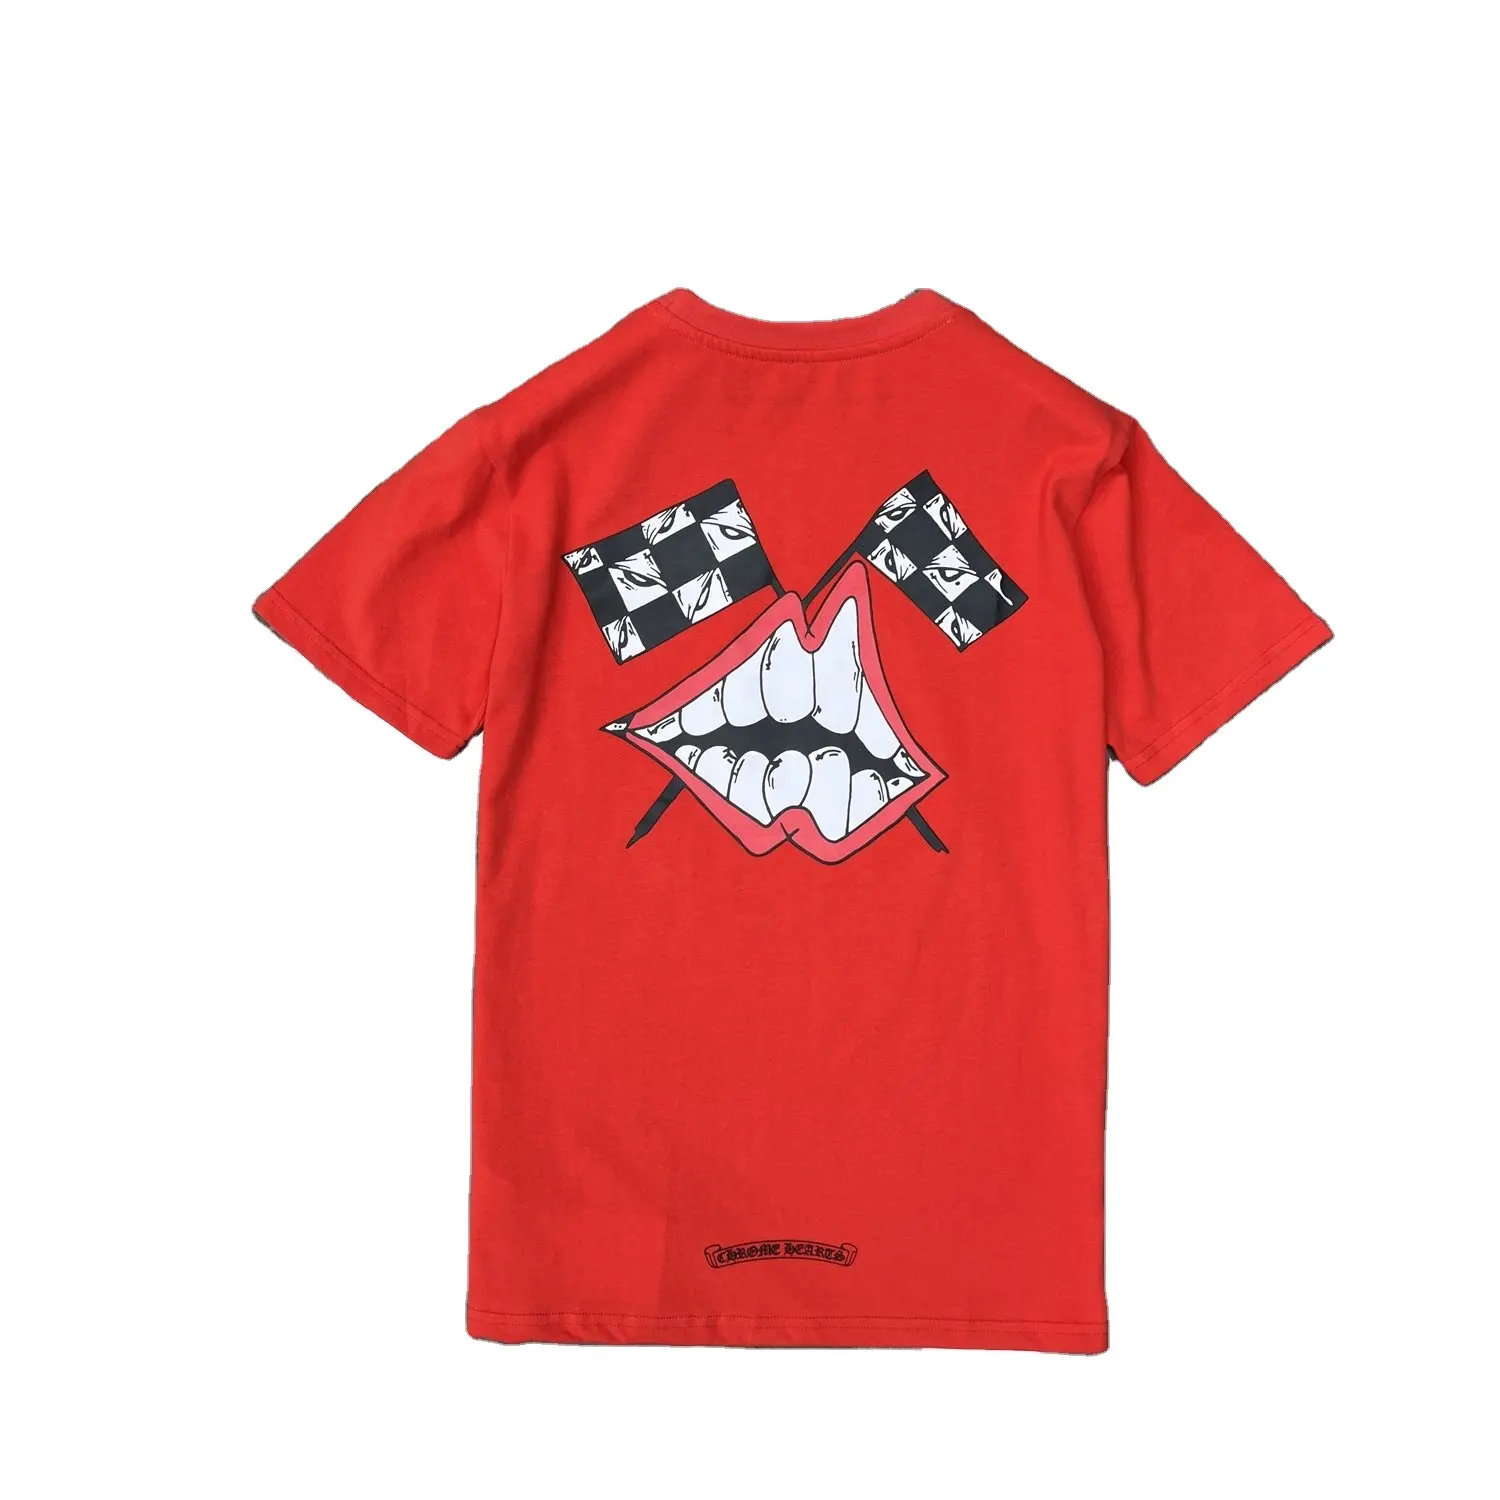 Unisex Đỏ Graffiti Miệng T-Shirt, Chất Lượng Cao, Quá Khổ, Tay Áo Ngắn, Trái Tim, Thương Hiệu Nổi Tiếng, Chrome, Người Đàn Ông Của T-Shirt, SF8501